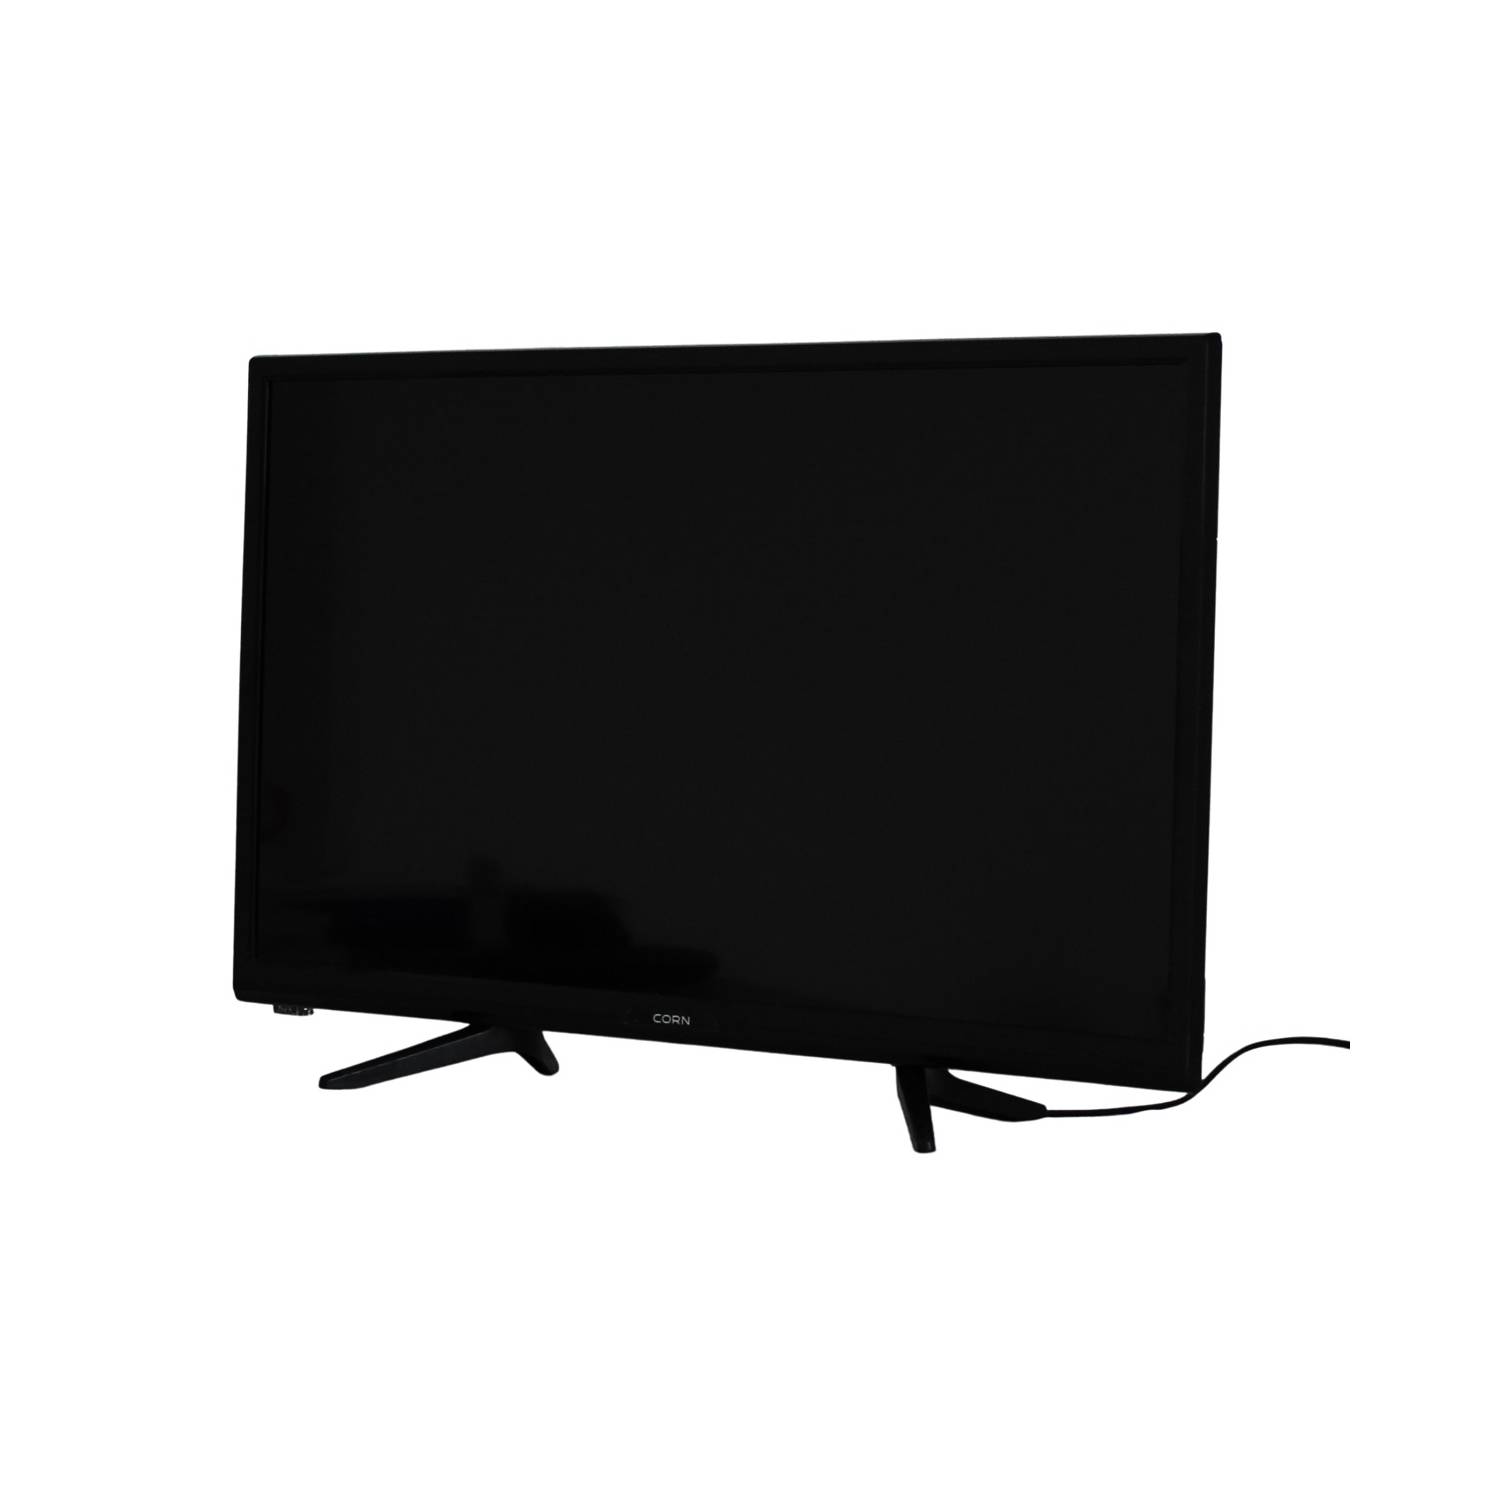 Televisor DLED 24 Sunstech 24SUN22V, 12V, TDT HD, USB, color Negro